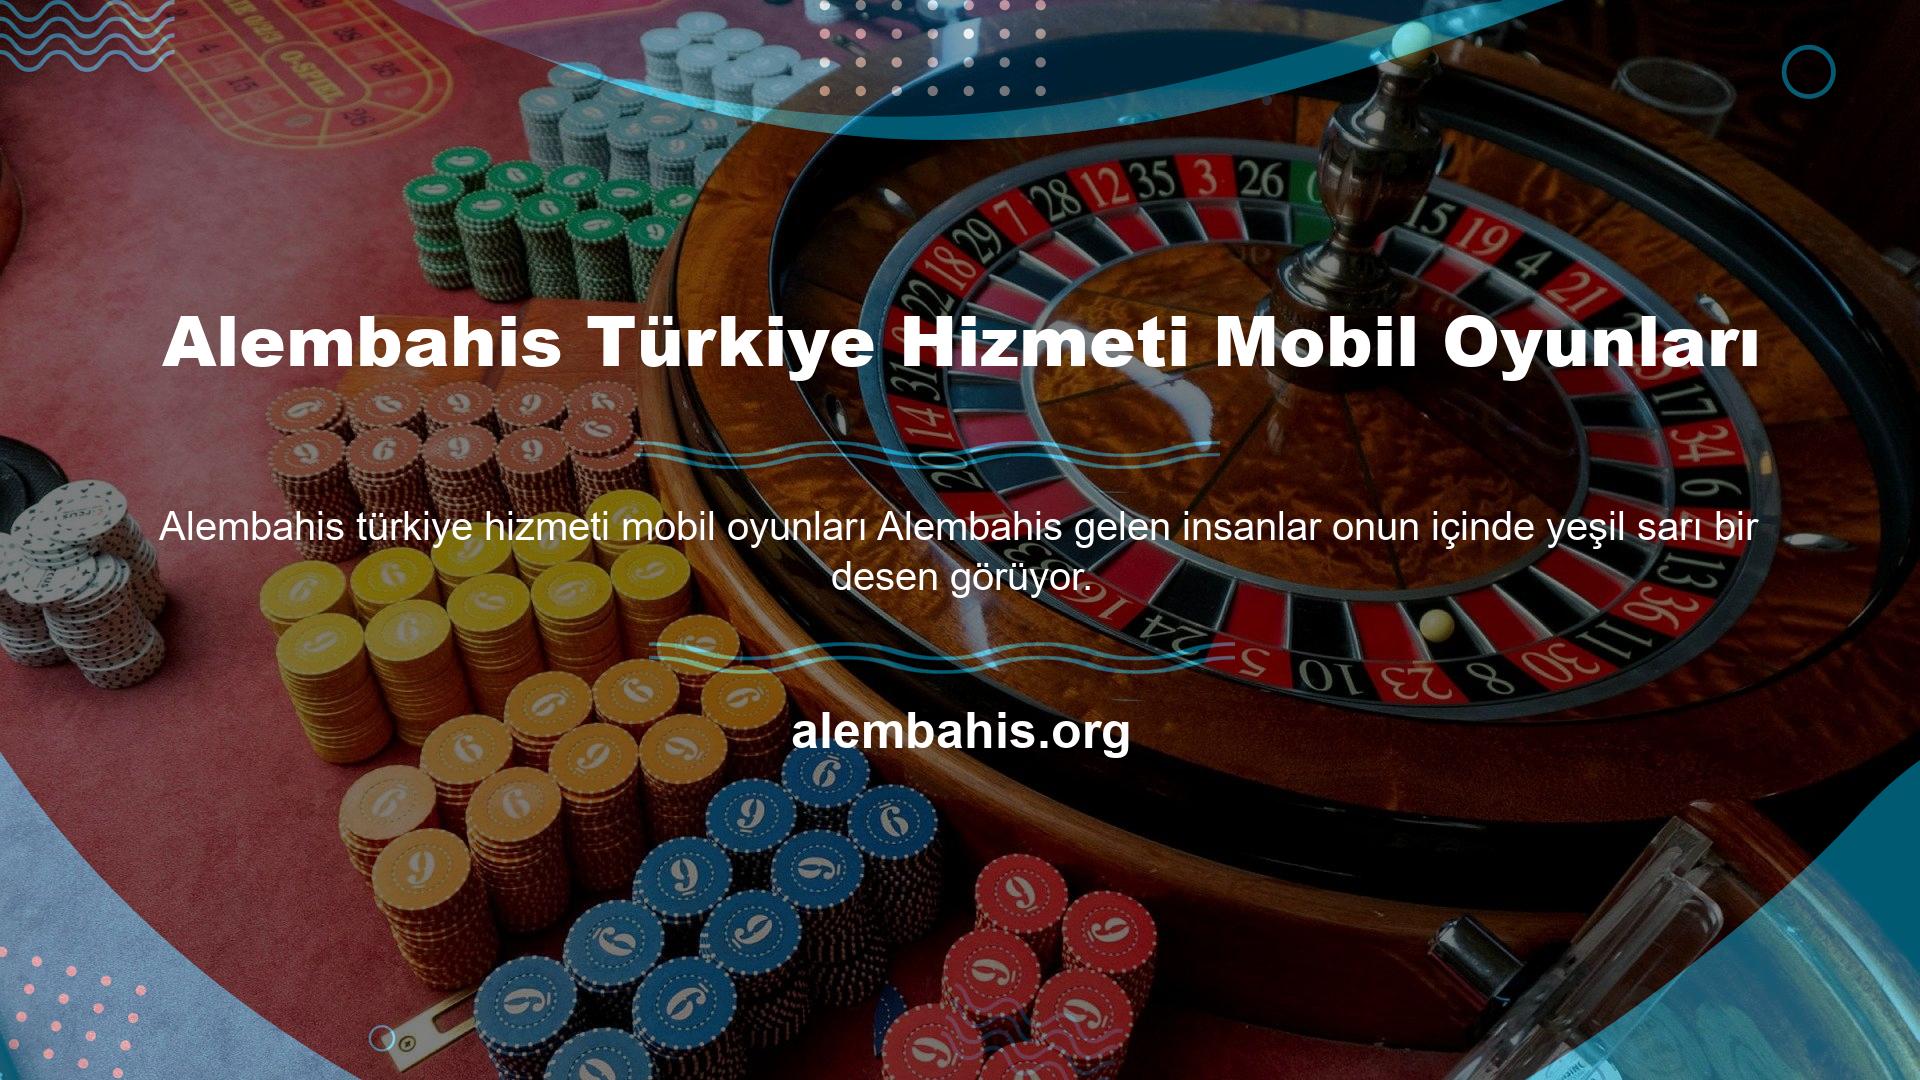 Türkiye'deki Alembahis servisi, olağanüstü hızlı ve renkli tasarımıyla tüm hizmetlerini listeliyor